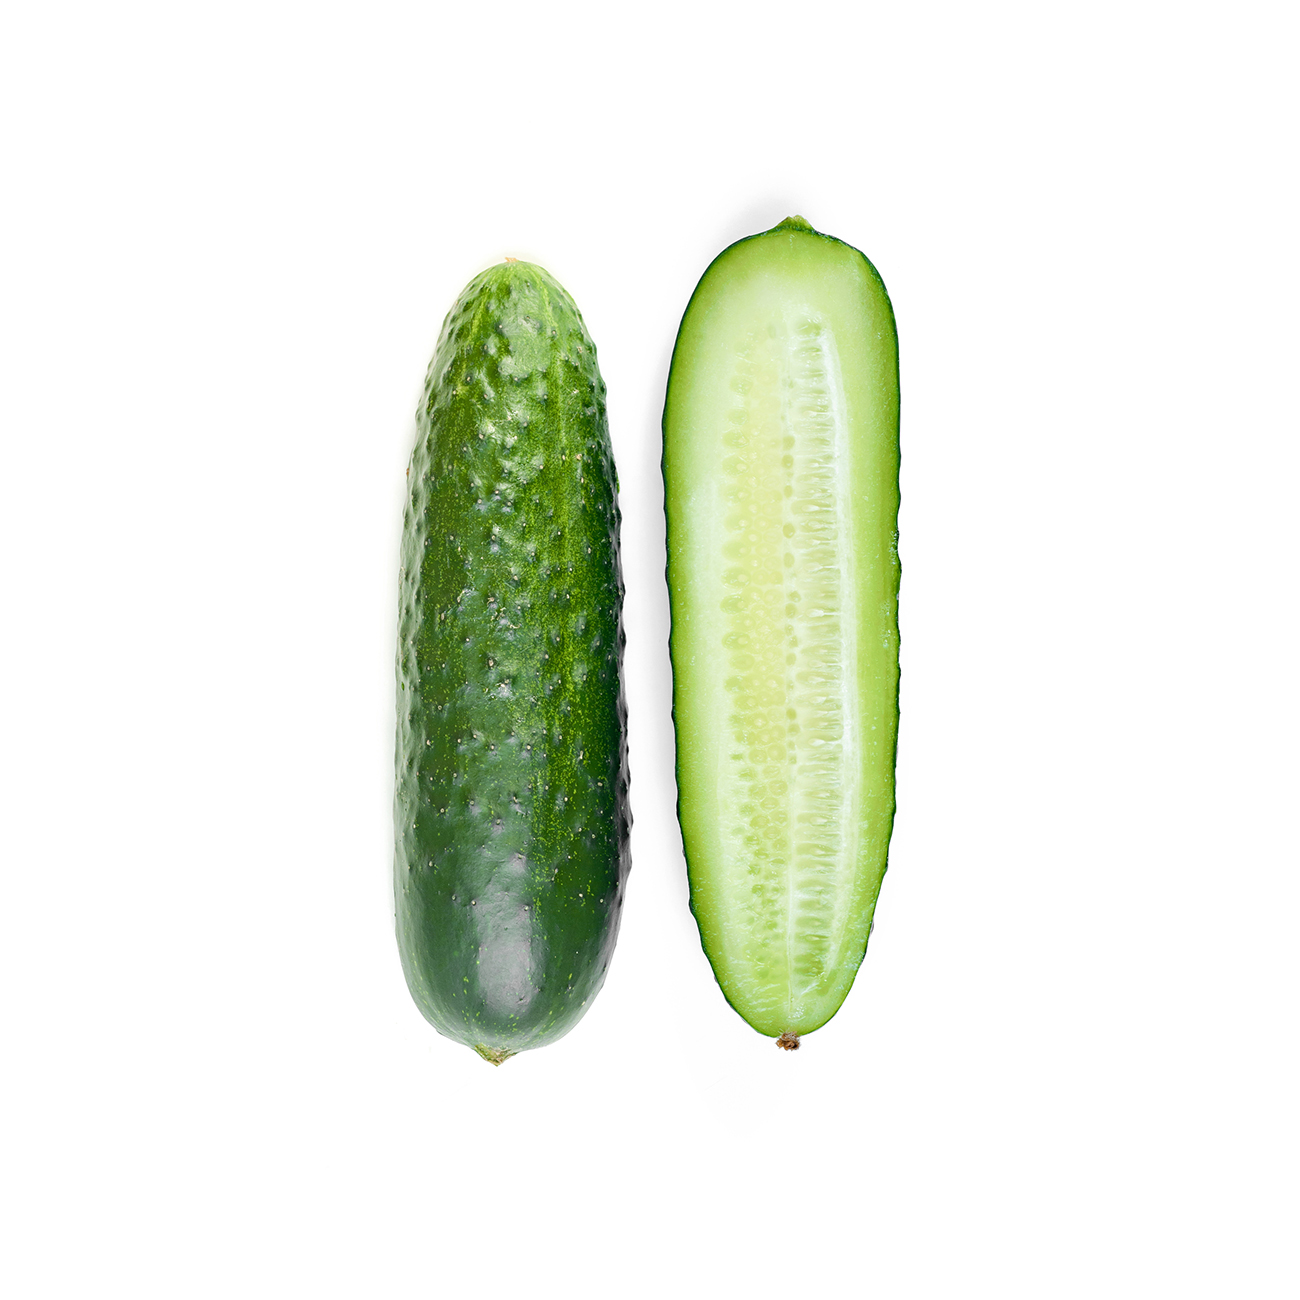 Cucumber, common